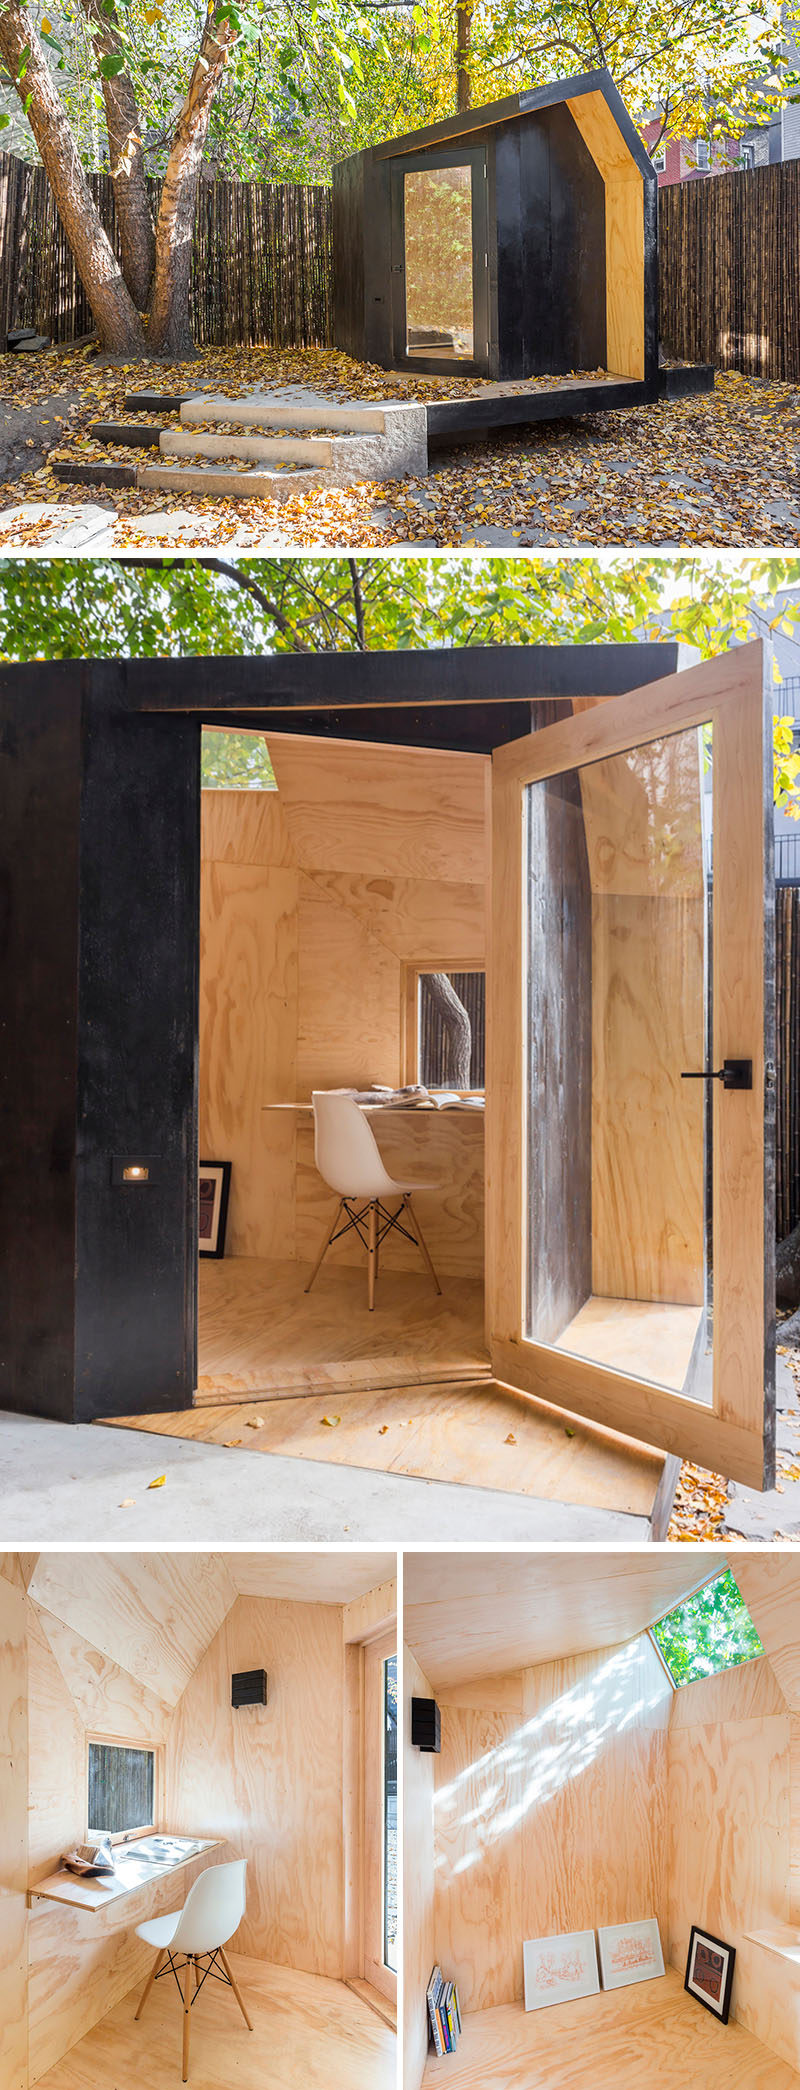 Небольшой домашний офис на заднем дворе с внешней отделкой из кедра, окрашенного в черный цвет, и внутренней отделкой из натуральной сосновой фанеры.